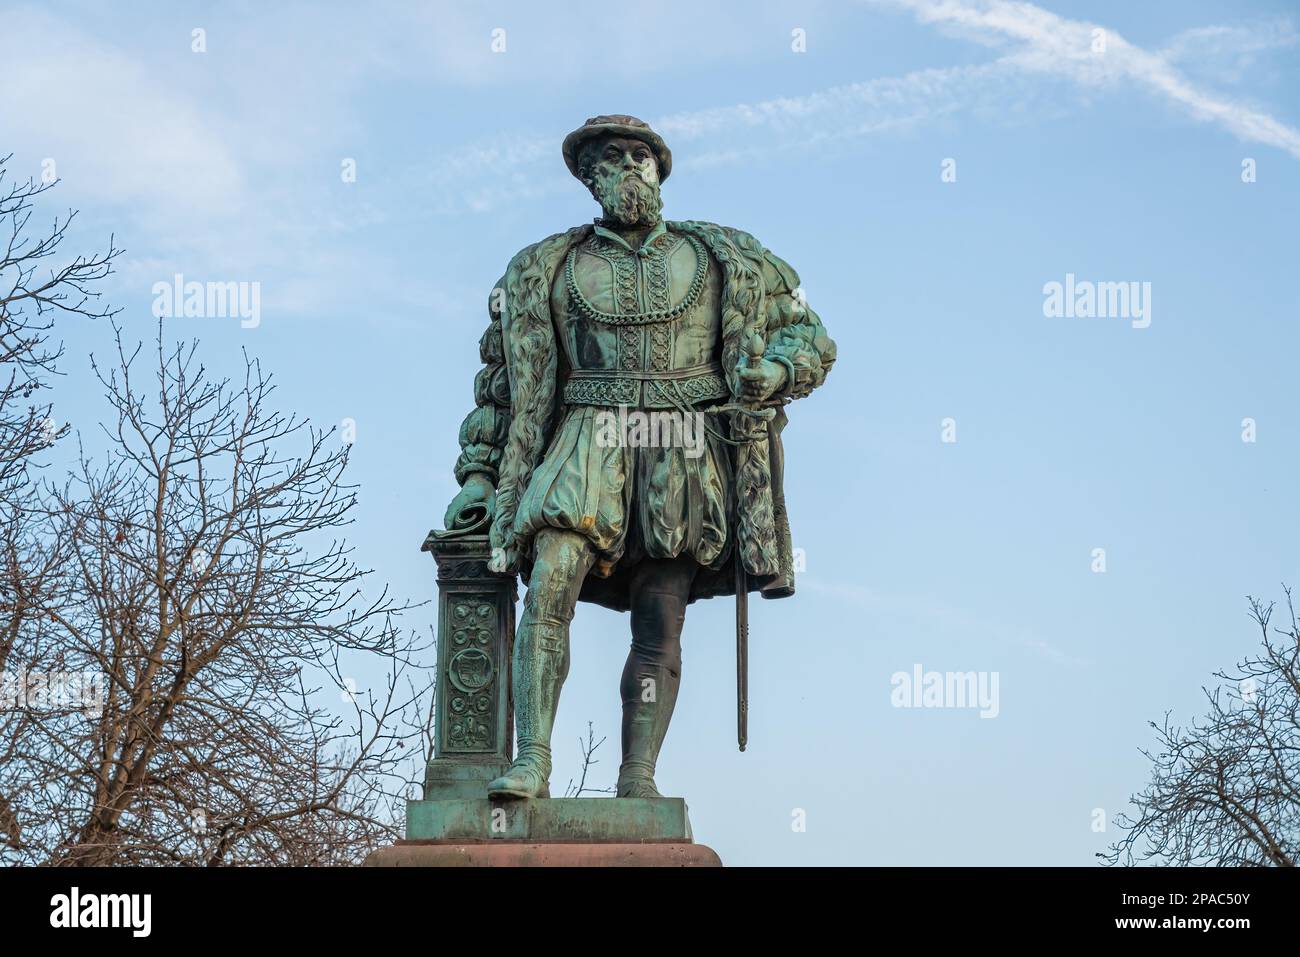 Christoph Duke of Wurttemberg Statue at Schlossplatz Square - Stuttgart, Germany Stock Photo